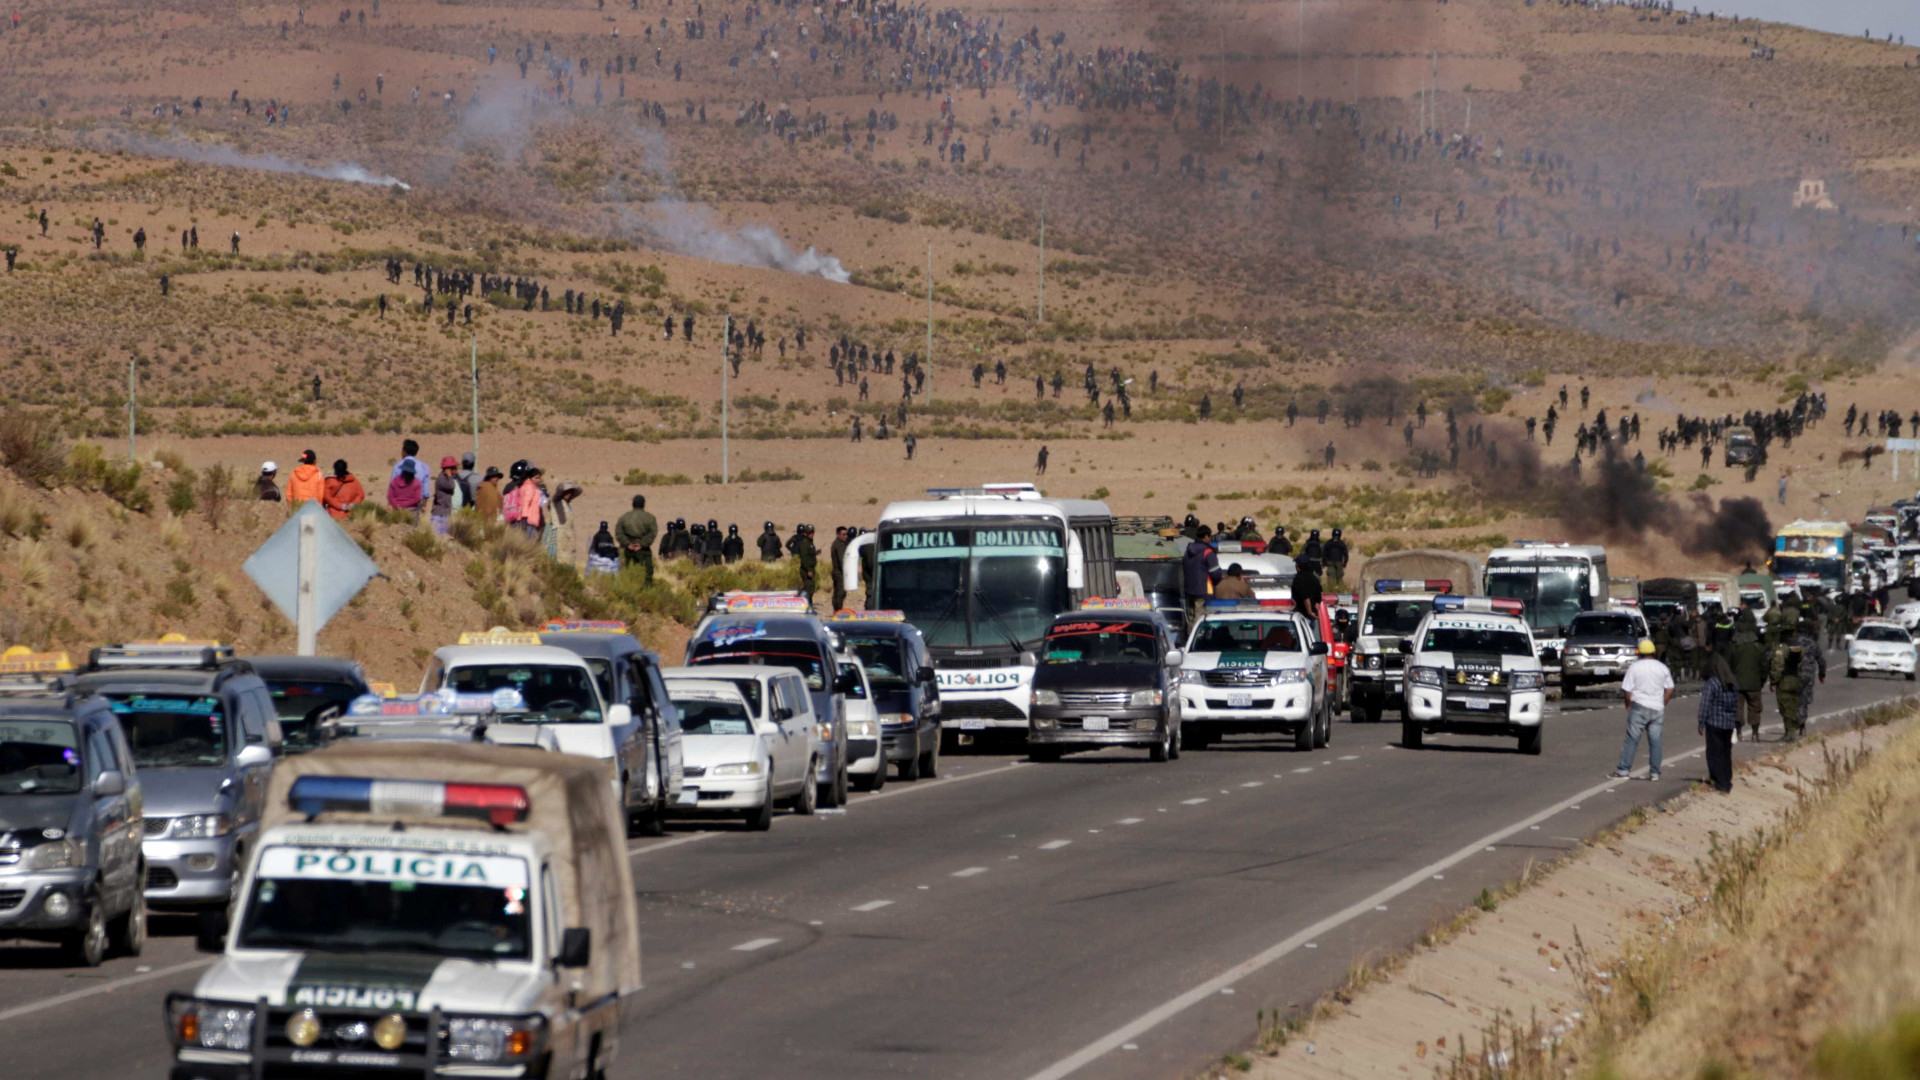 Manifestantes retém vice-ministro boliviano em protesto contra prisões